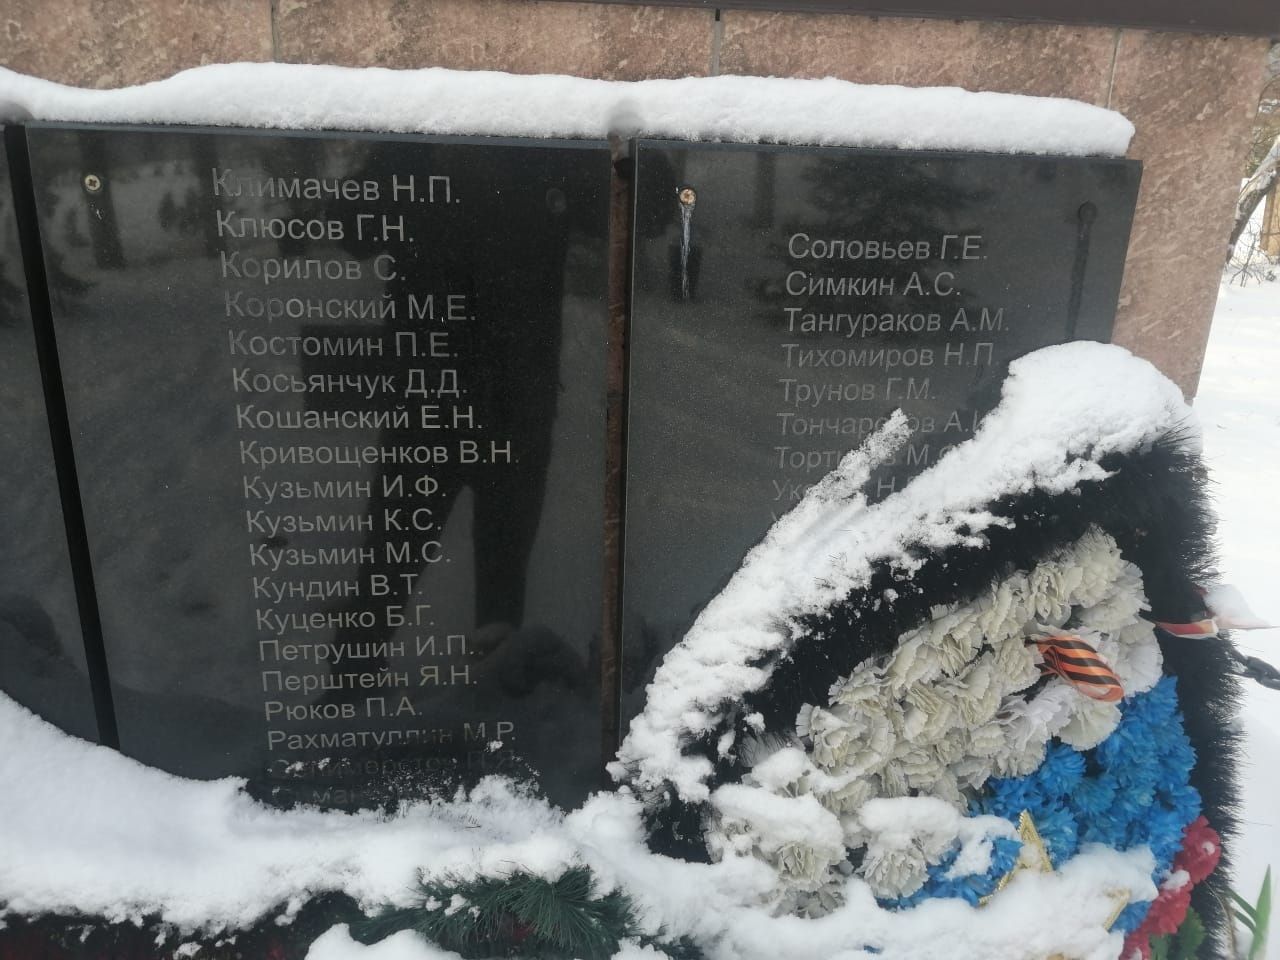 Рамис нашел могилу прадеда, погибшего в Великую Отечественную